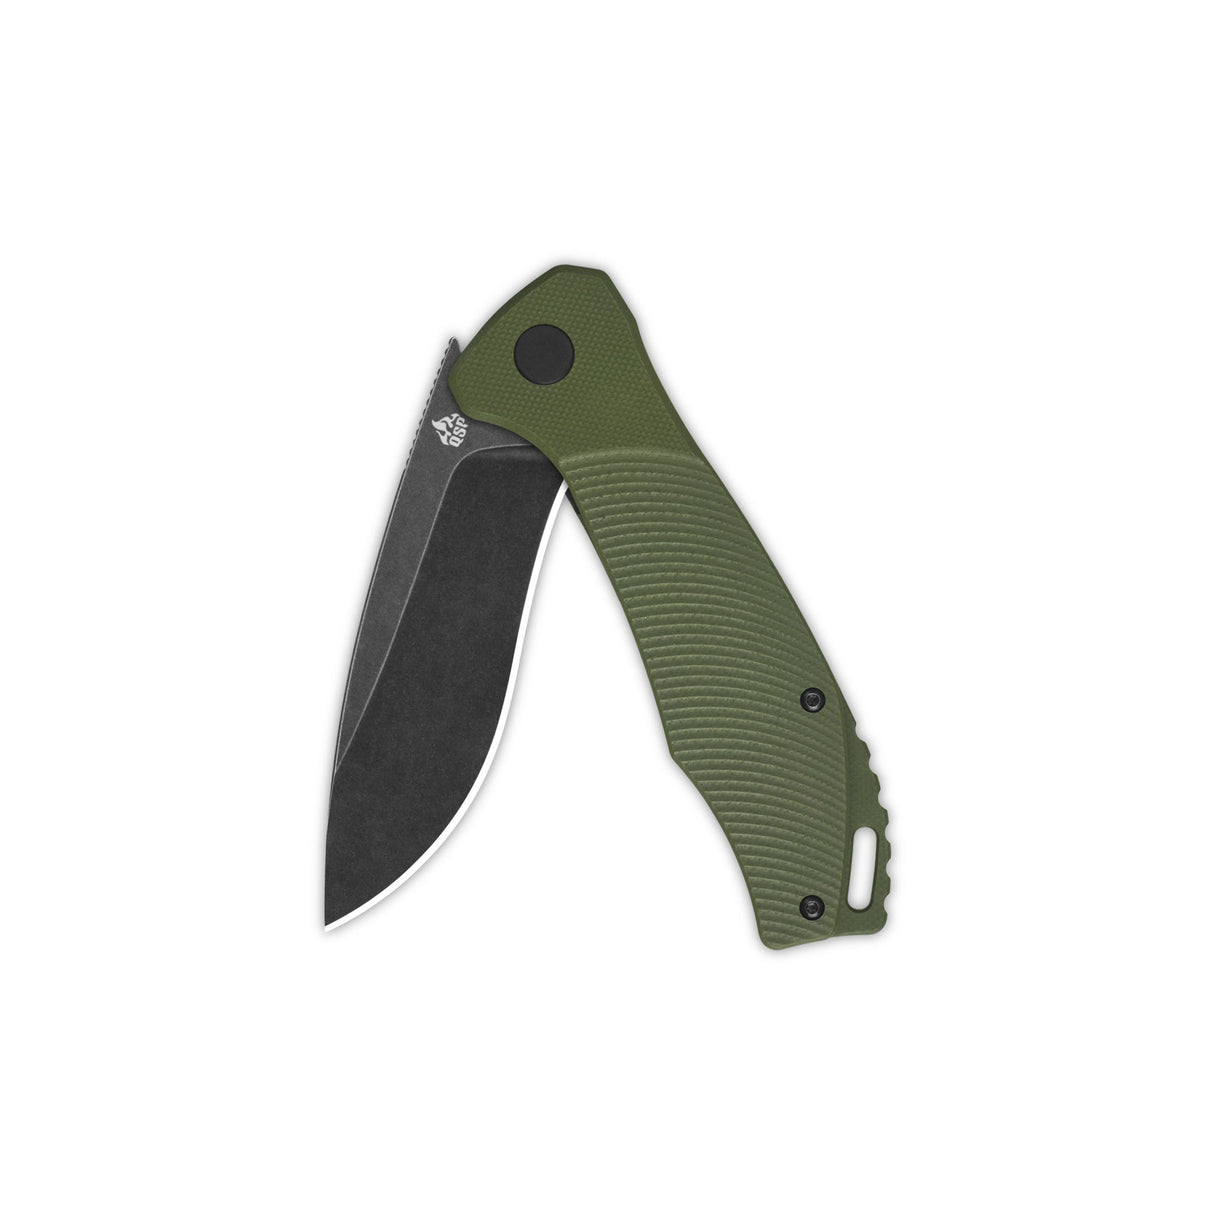 QSP Raven Liner Lock Pocket Knife D2 Blade Green G10 Handle